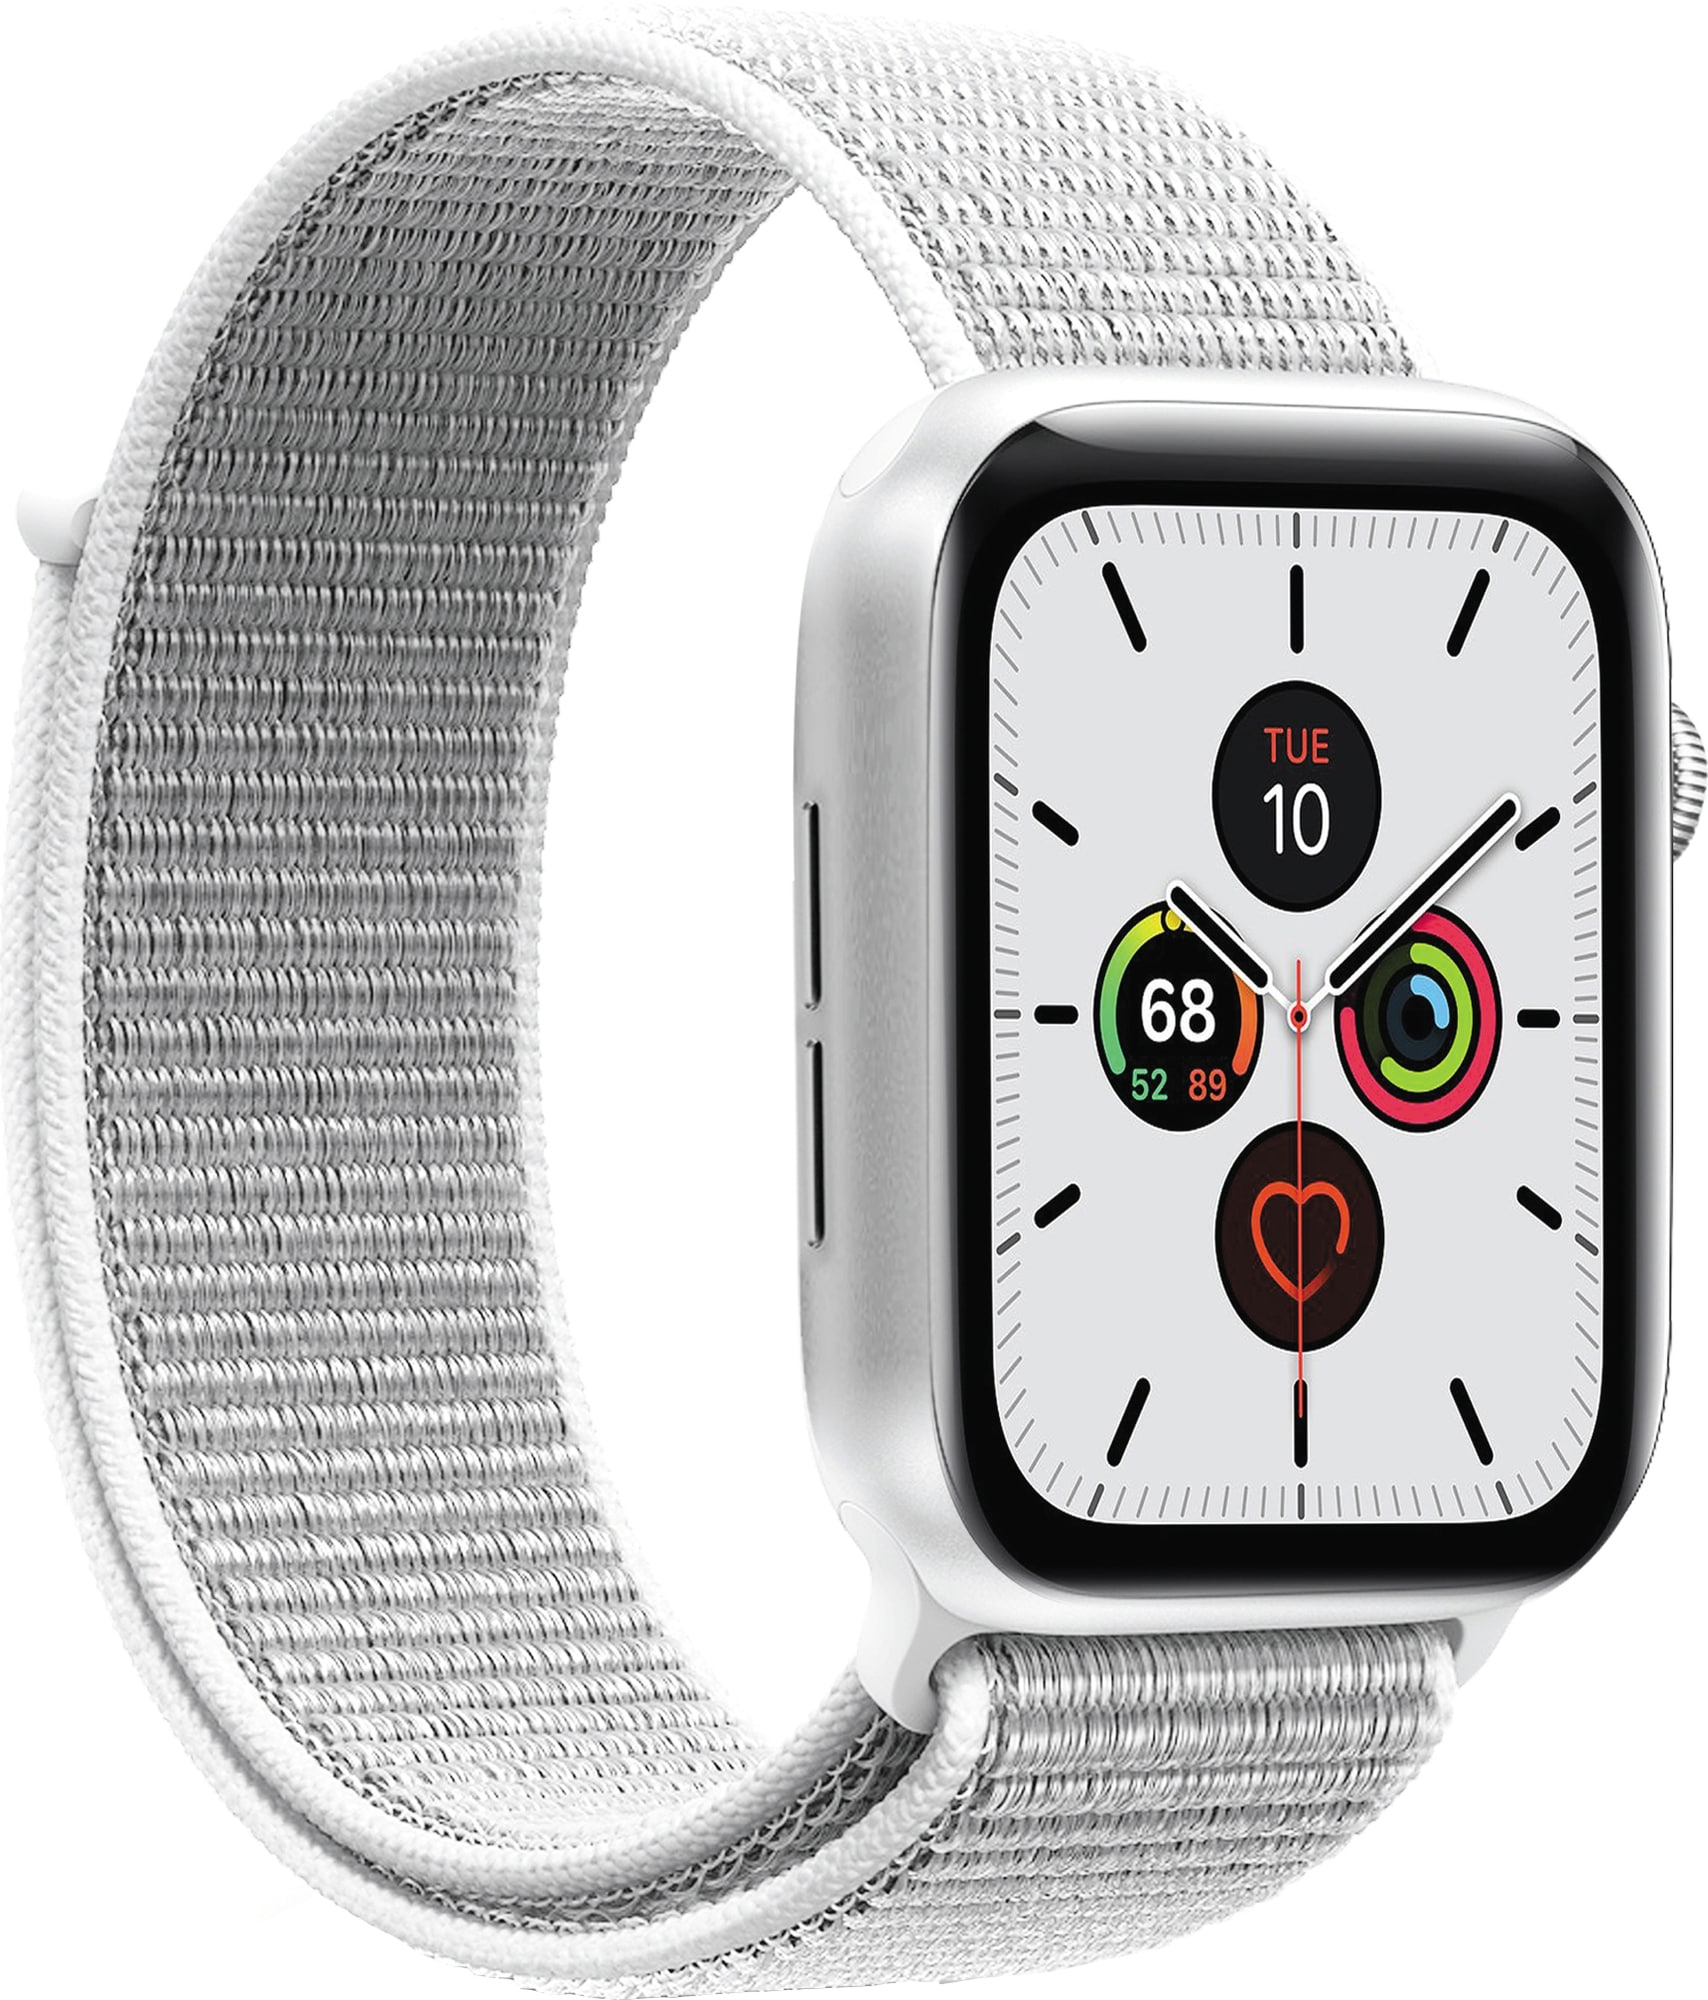 Kjøp tilbehør og Apple klokkereim til Apple Watch - Elkjøp